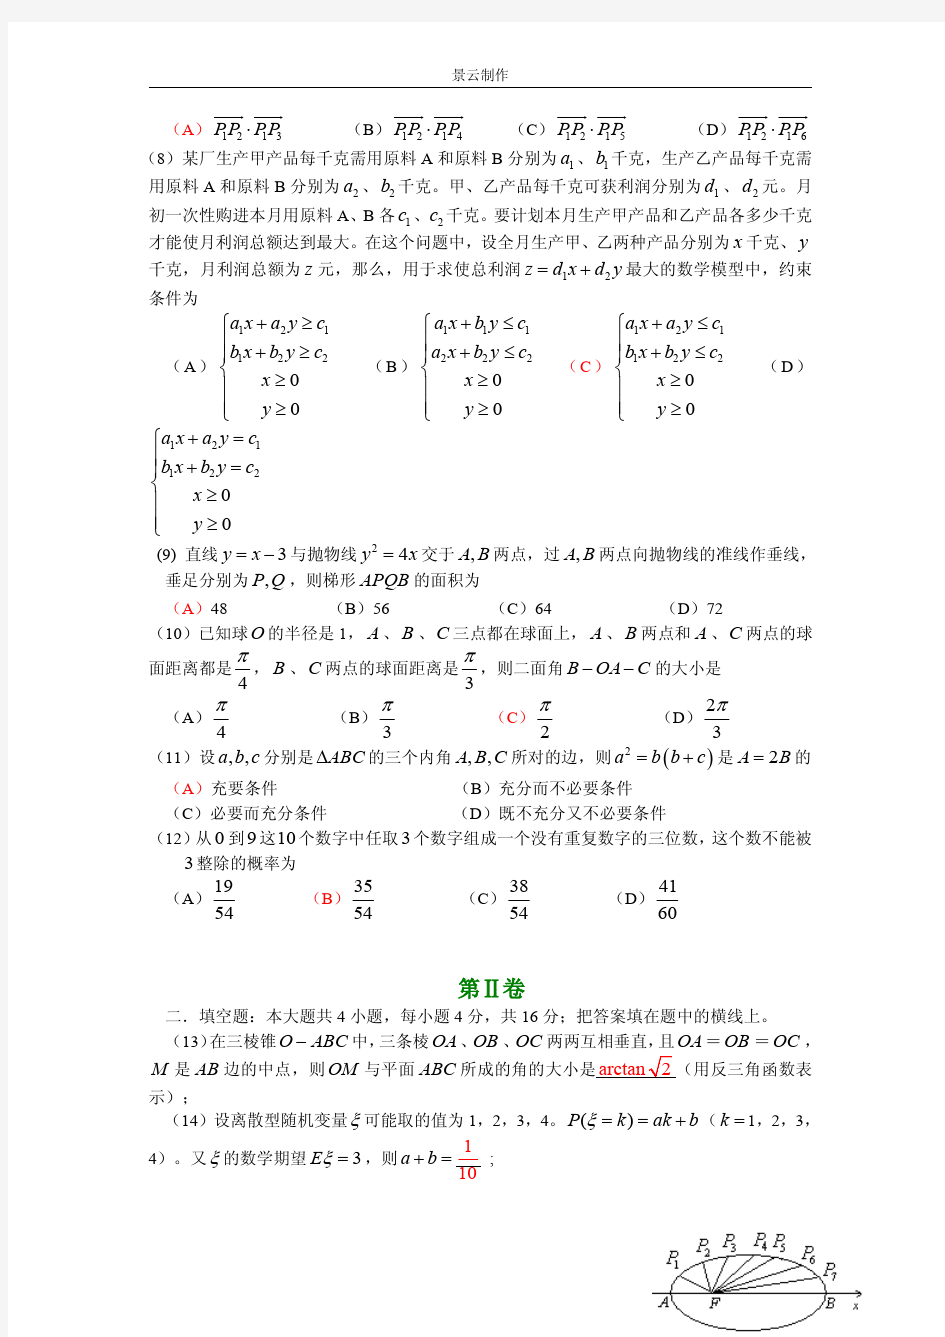 2006年高考理科数学试题及答案(四川卷)